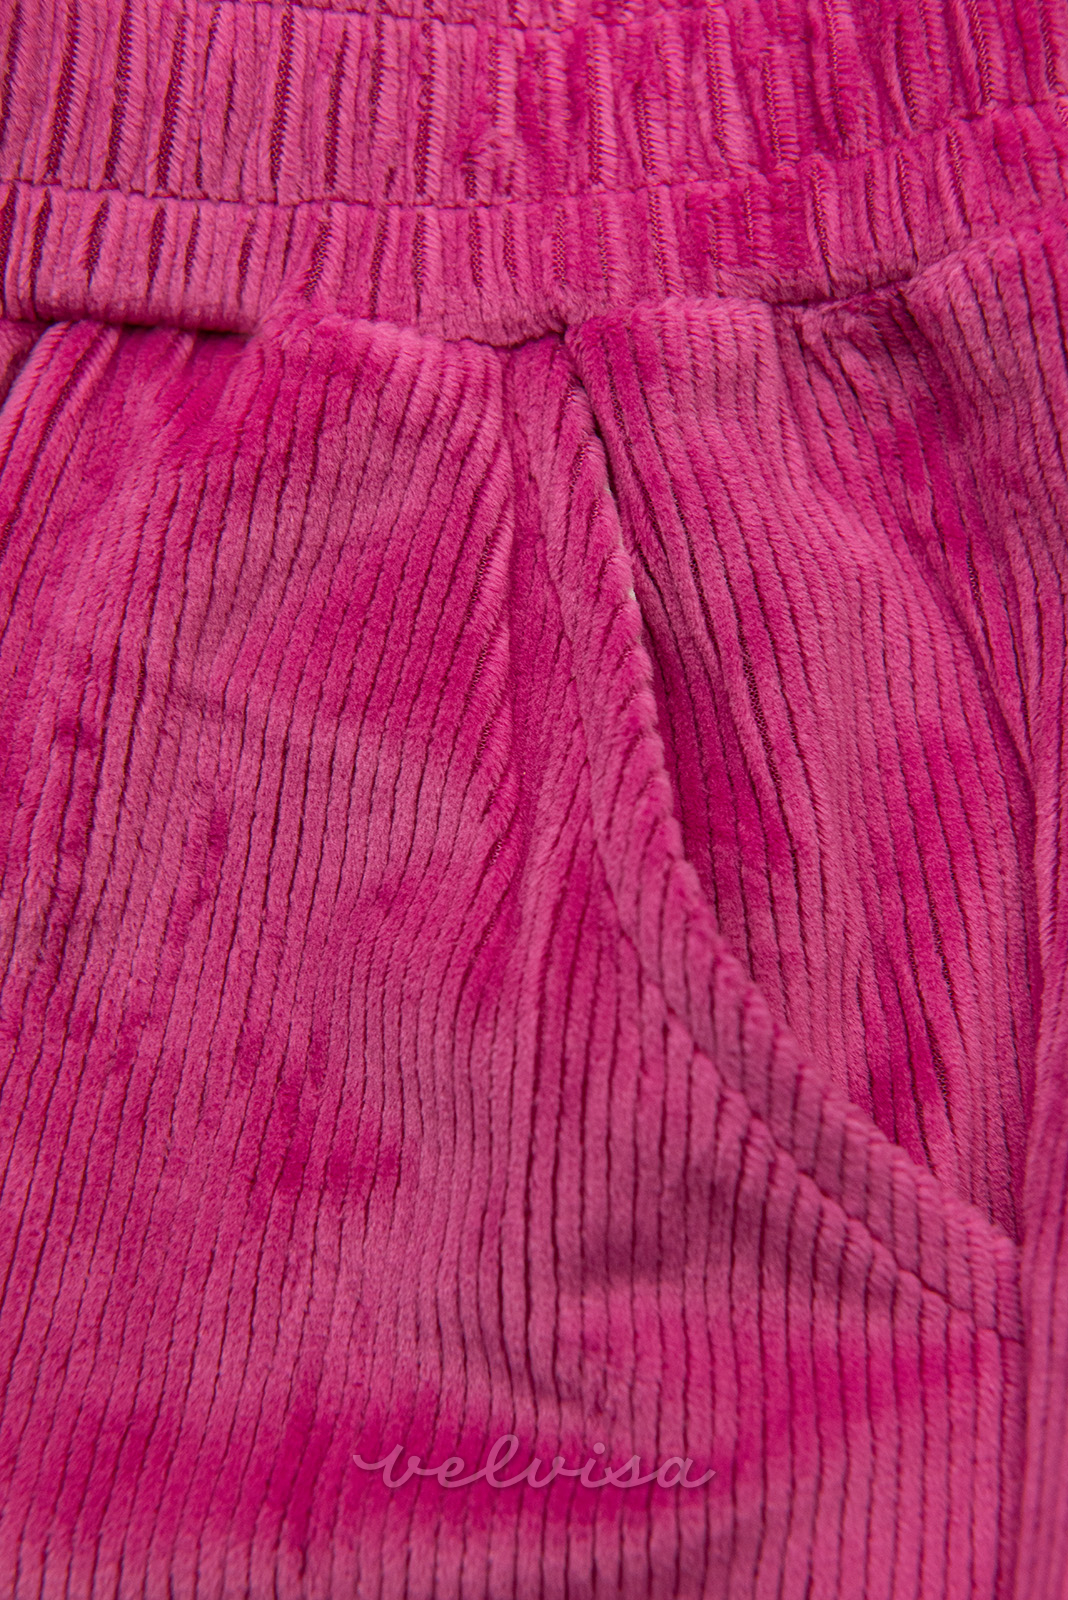 Ružičaste hlače s pojasom s vrpcom